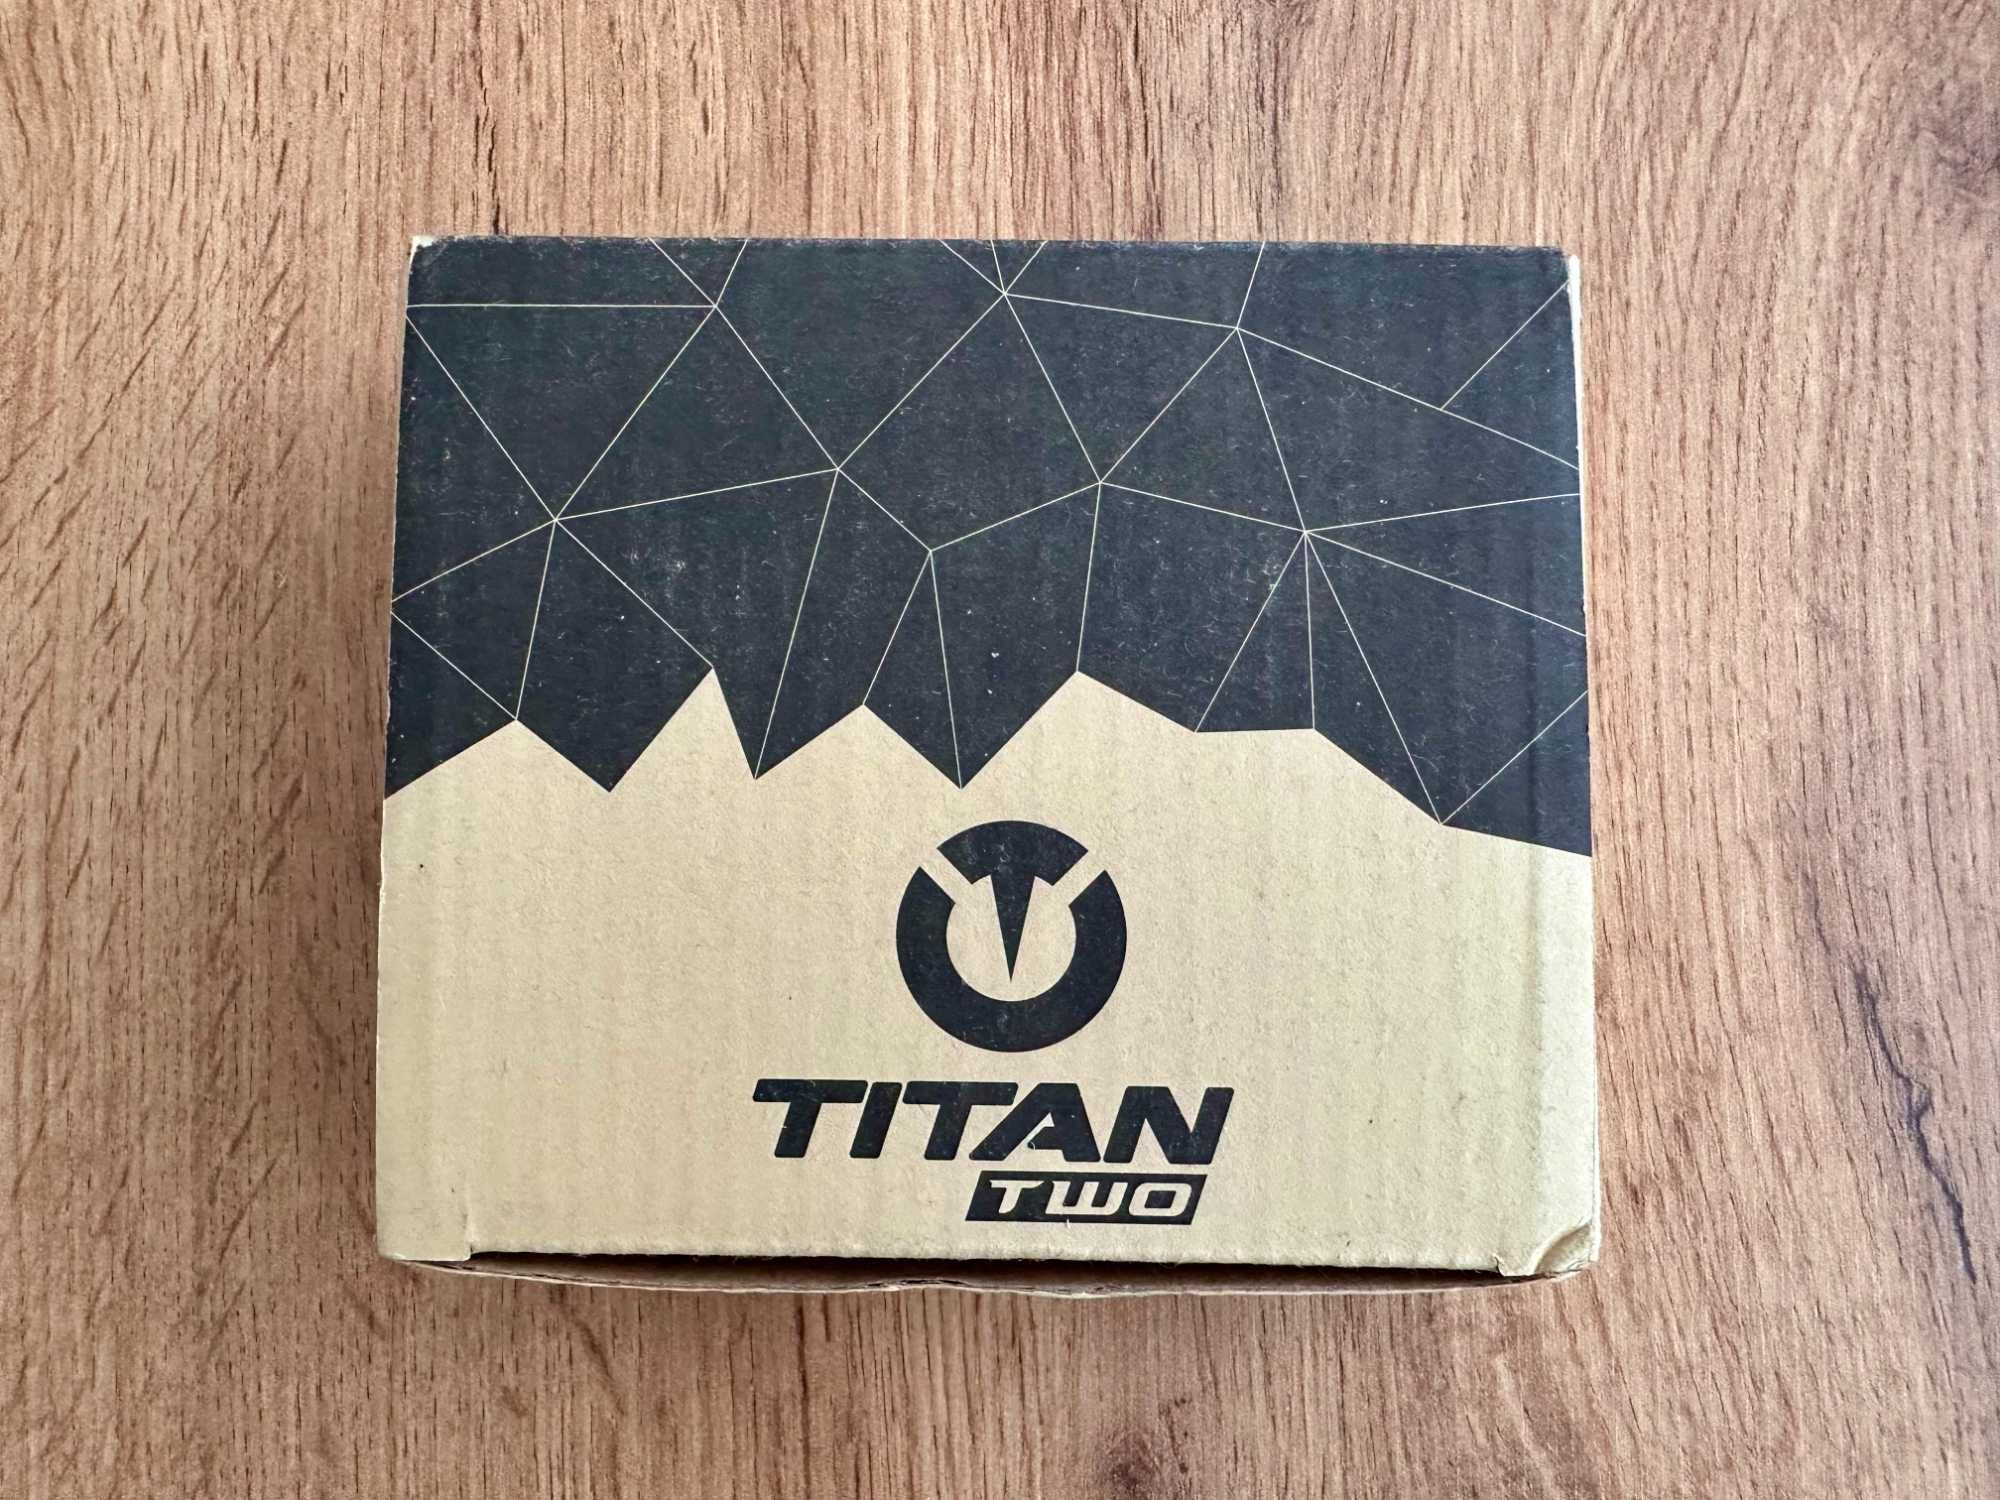 Titan Two console tuner